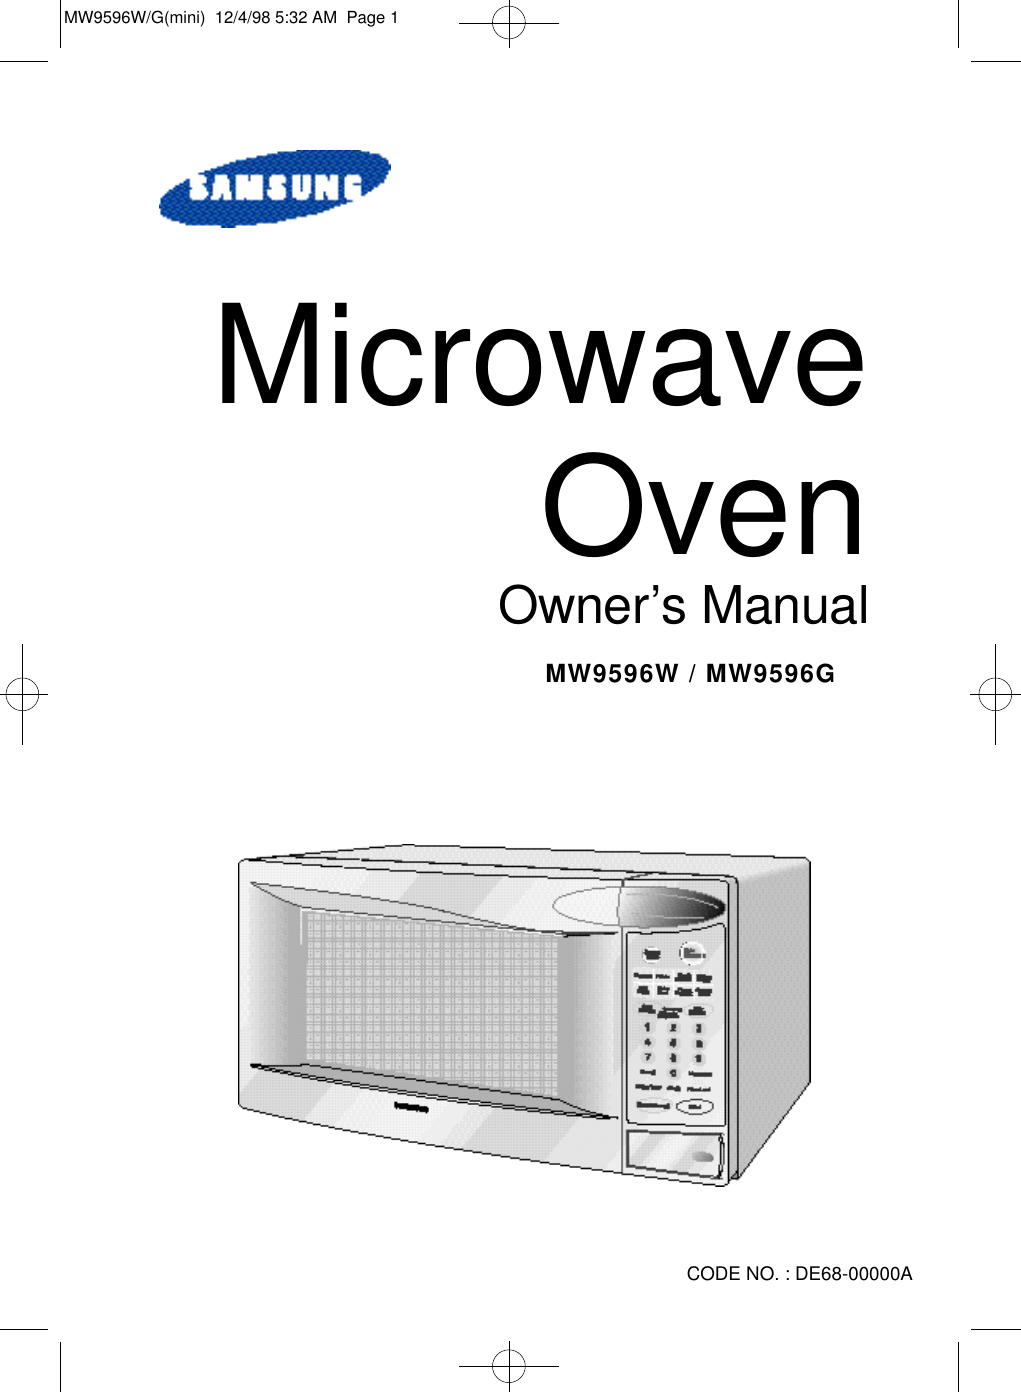 Microwave OvenO w n e r’s ManualMW9596W / MW9596GCODE NO. : DE68-00000AMW9596W/G(mini)  12/4/98 5:32 AM  Page 1